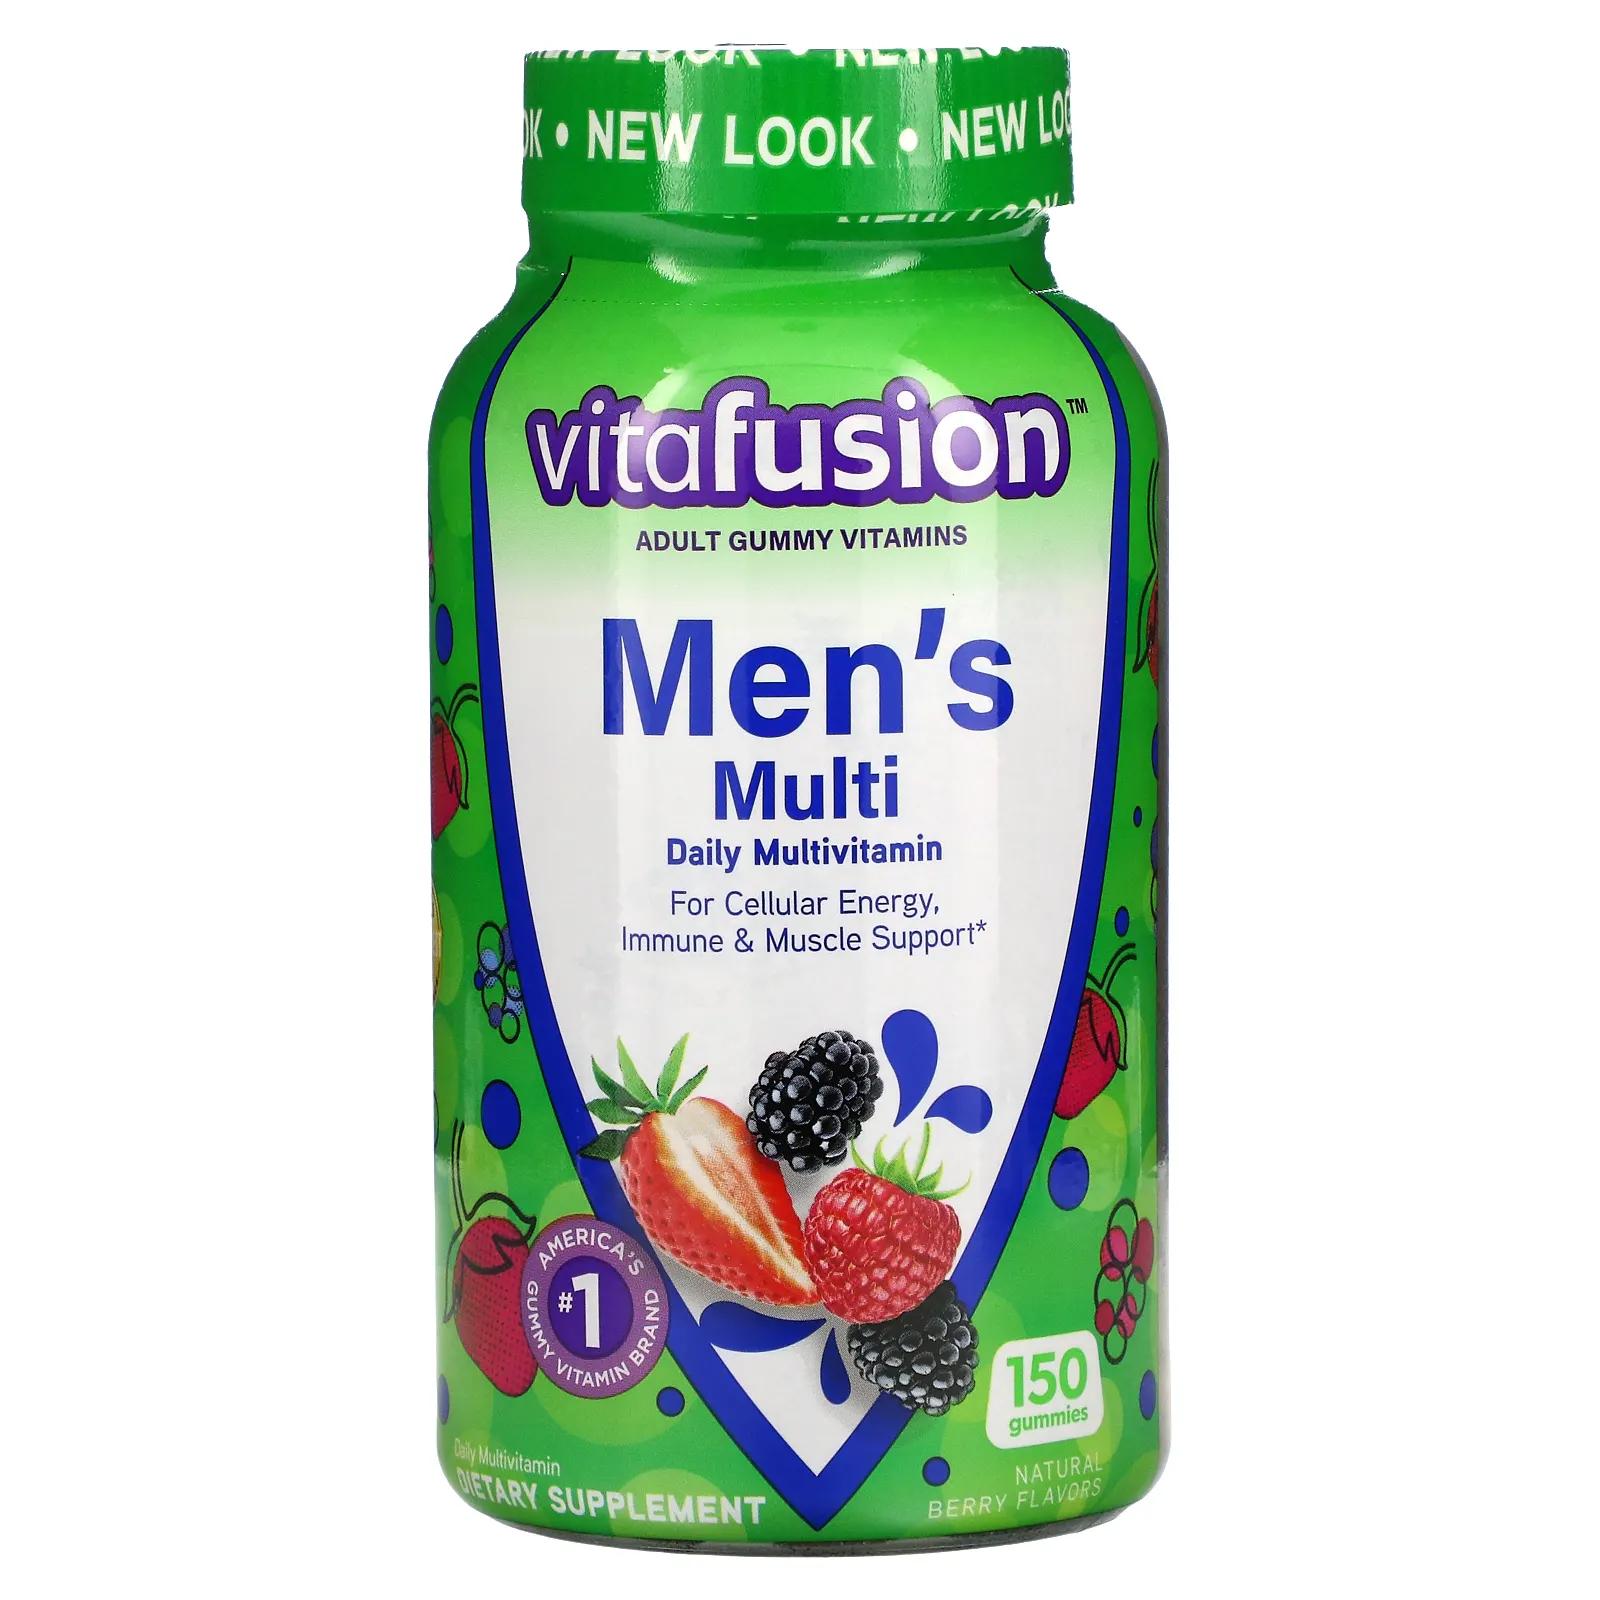 VitaFusion Комплексные мультивитамины для мужчин натуральные ягодные вкусы 150 жевательных таблеток мультивитамины жевательные vitafusion 150 таблеток